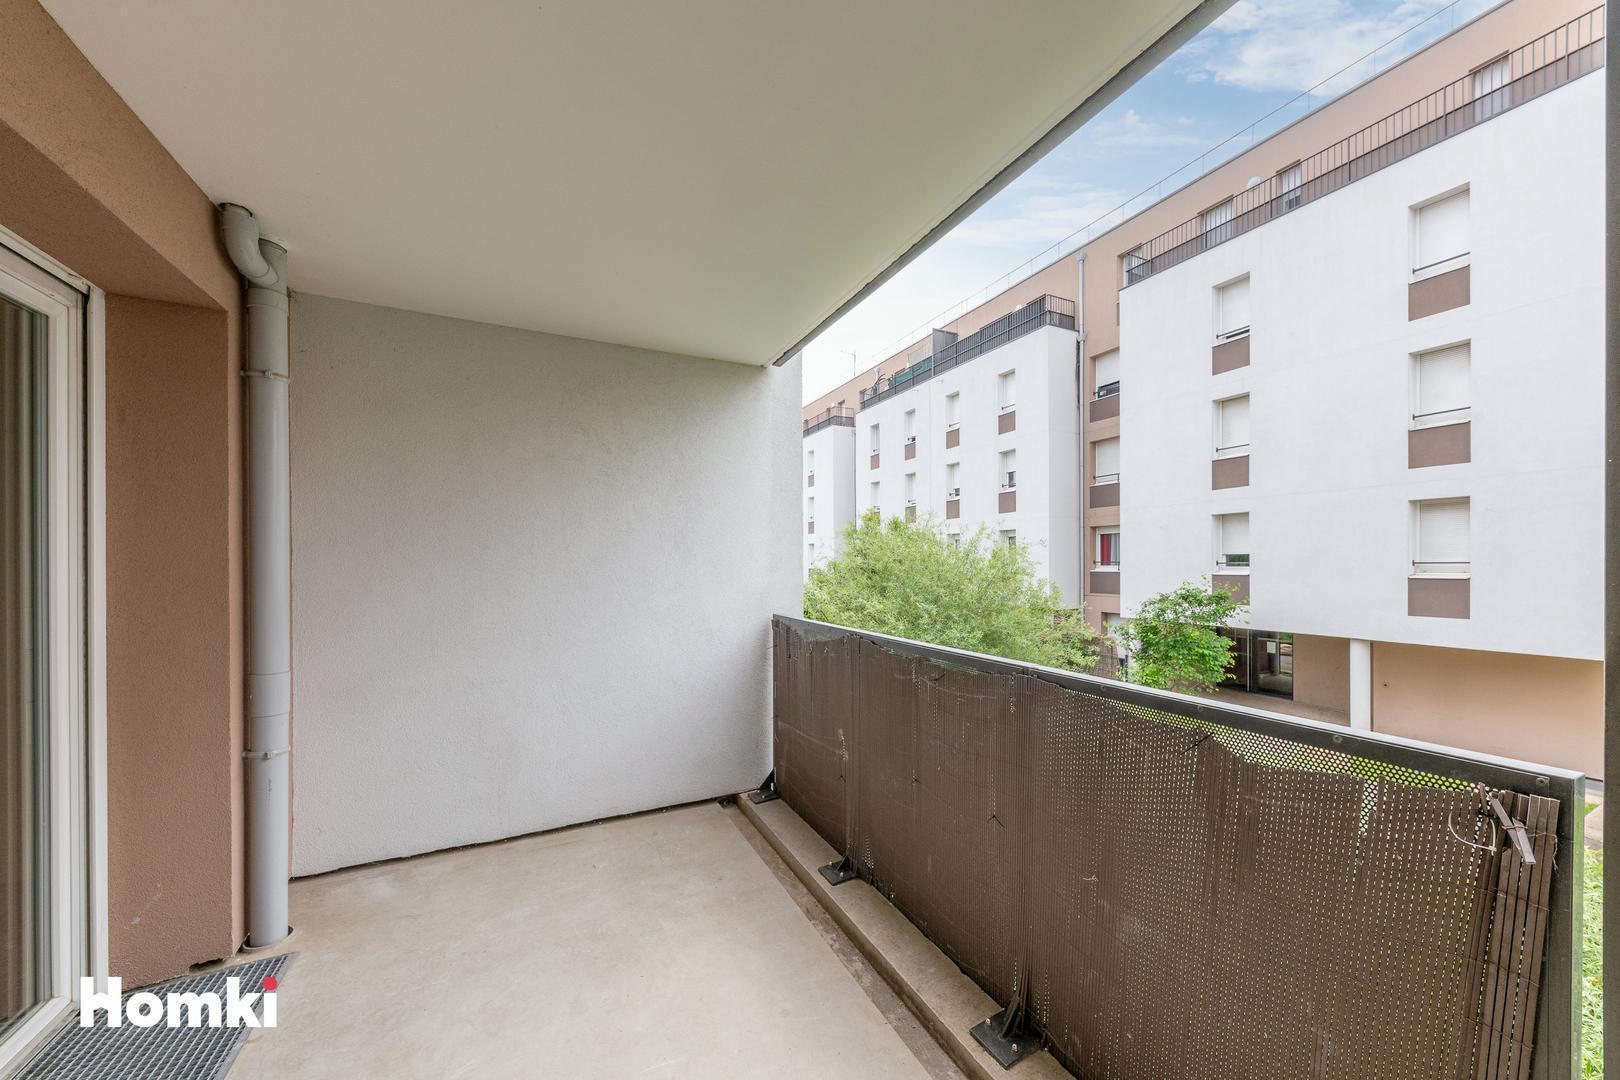 Homki - Vente Appartement  de 58.0 m² à Vénissieux 69200